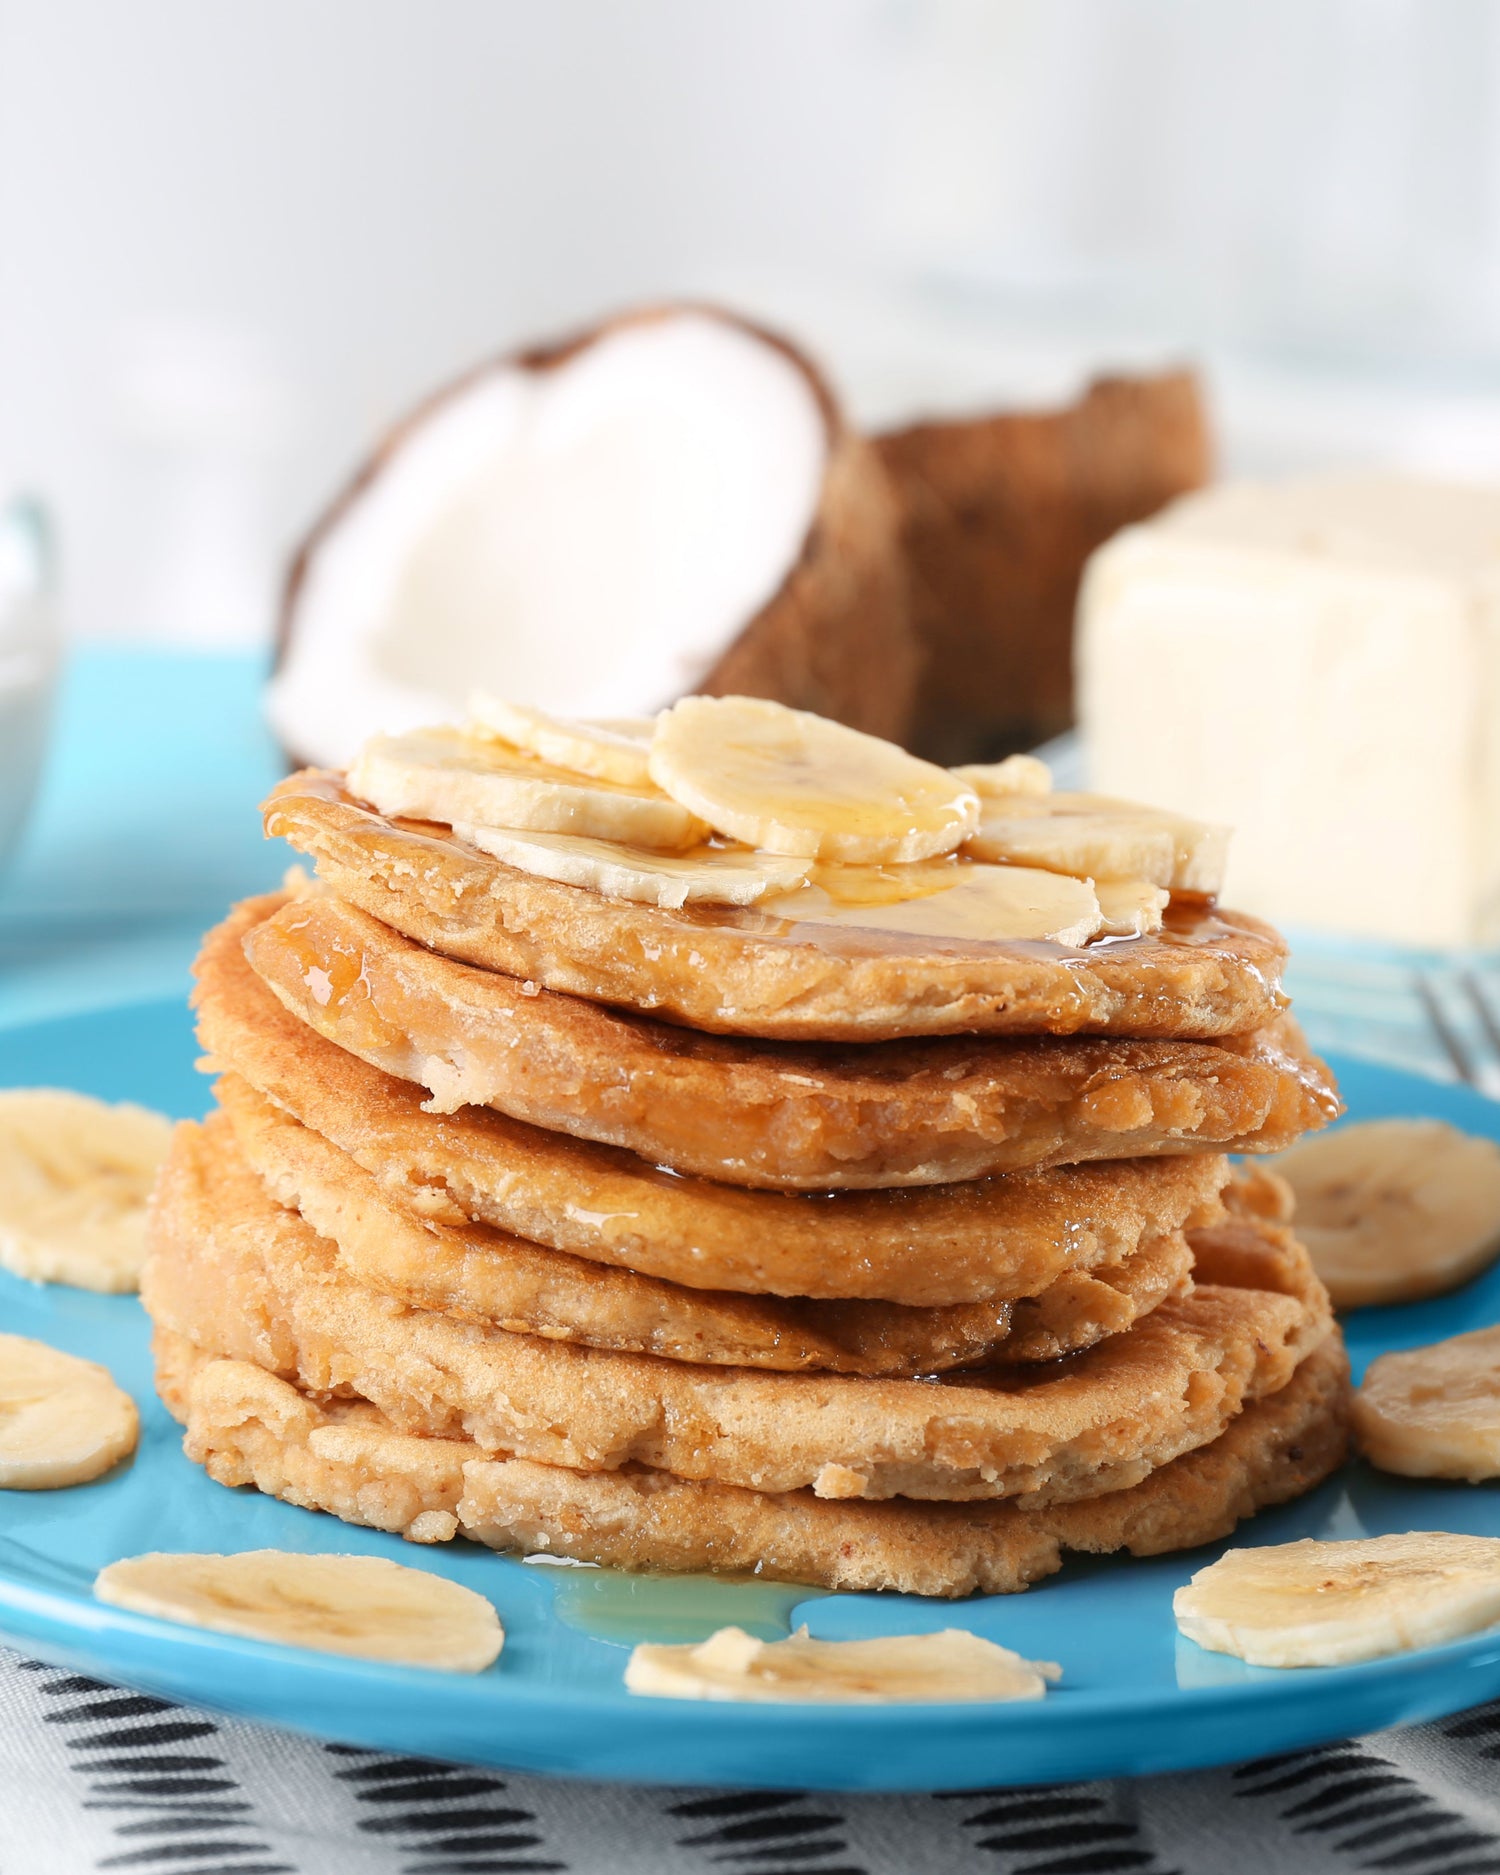 🥥 Kokosnuss-Protein-Pancakes: Ein tropischer Start in den Tag